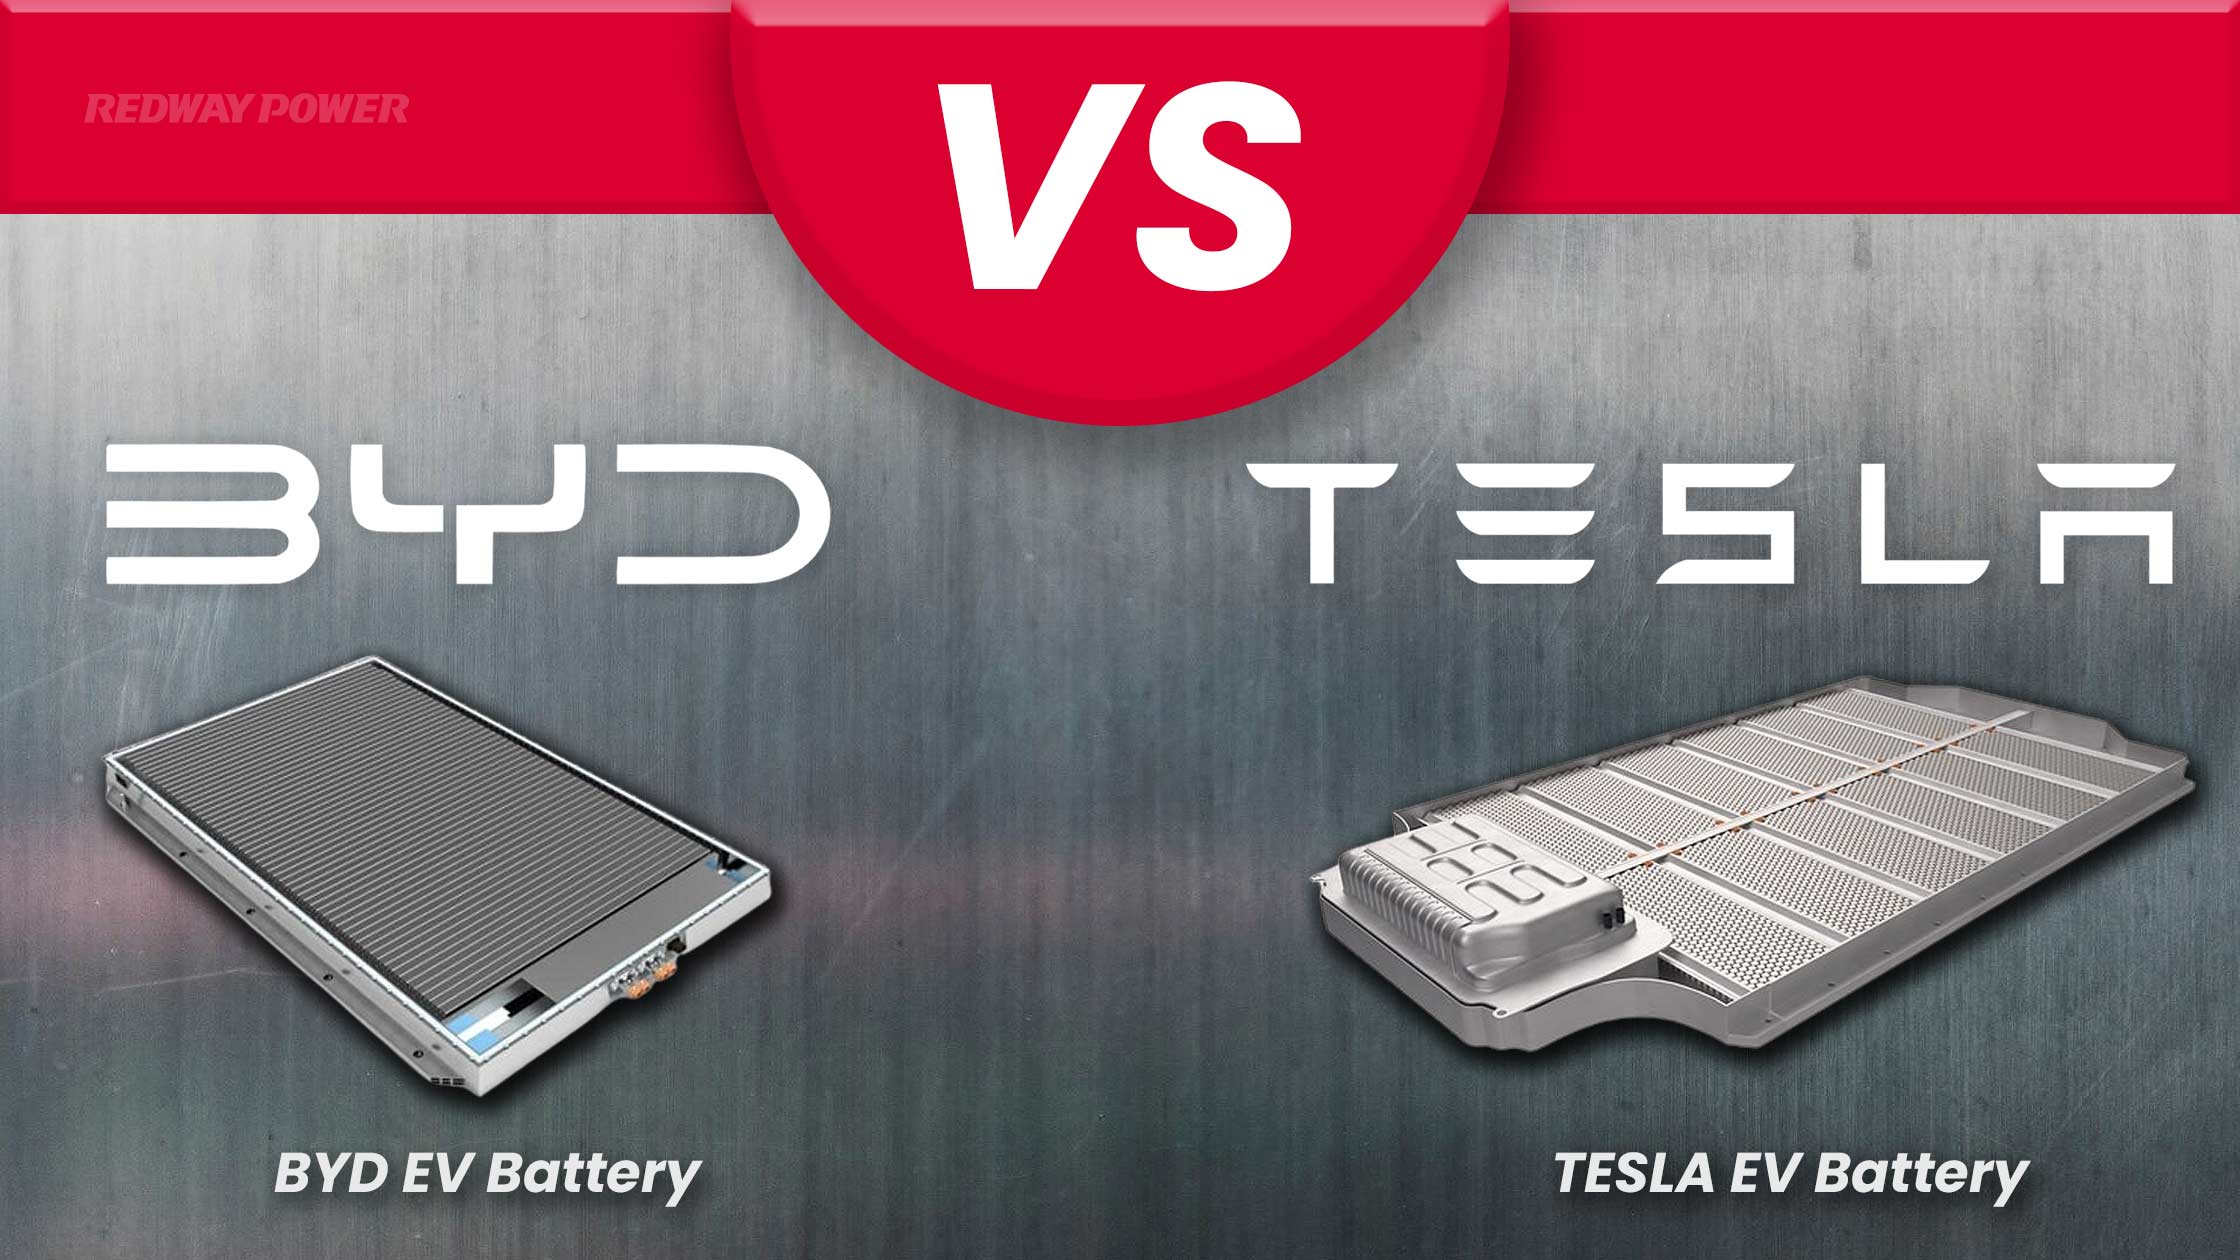 BYD vs Tesla Battery / redway power